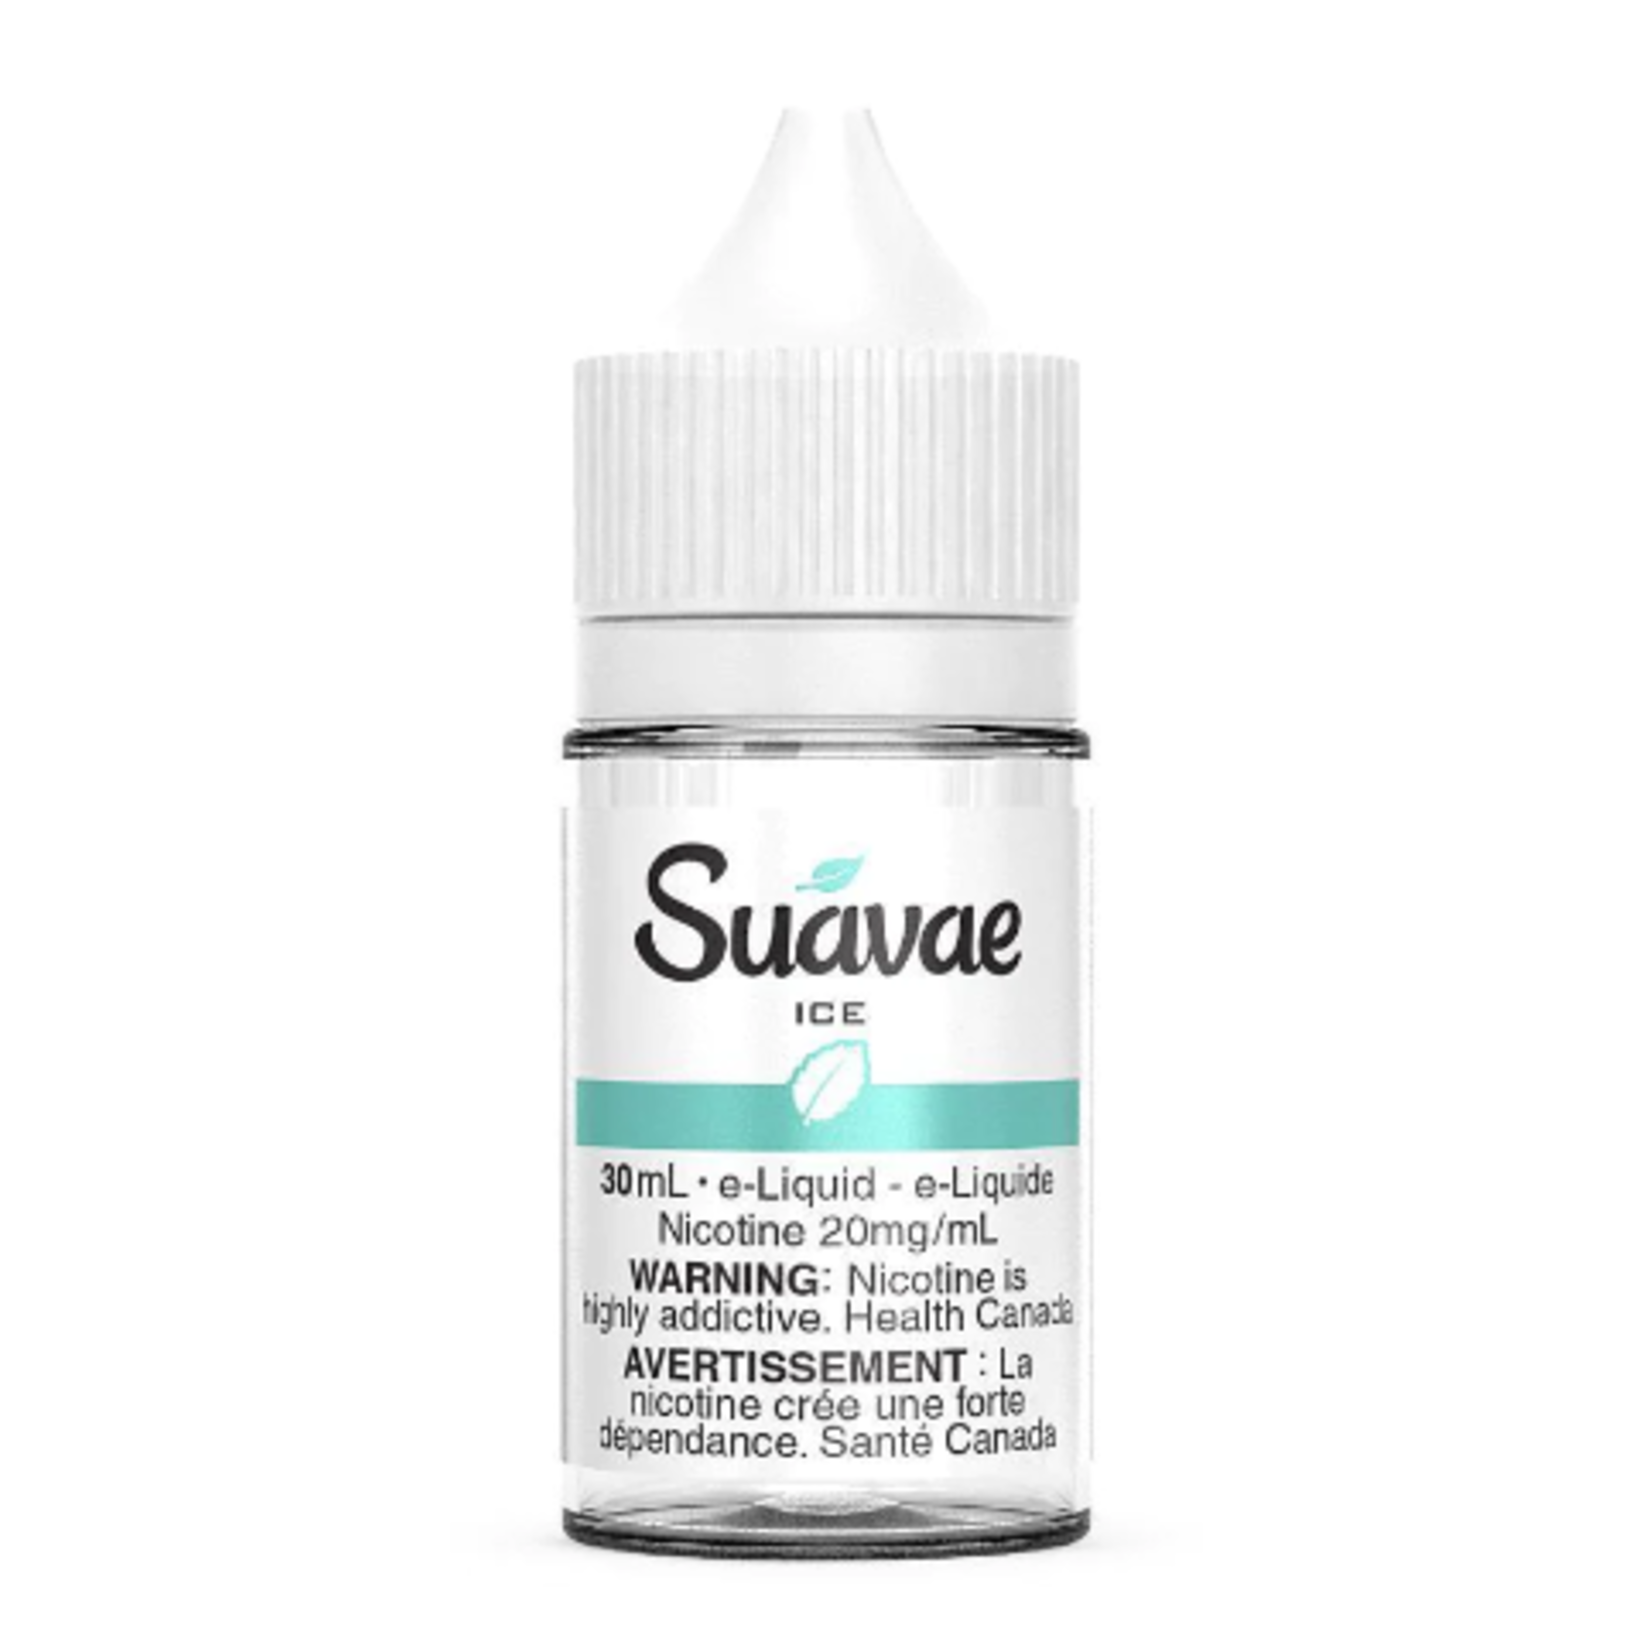 Suavae Ice Salt nicotine